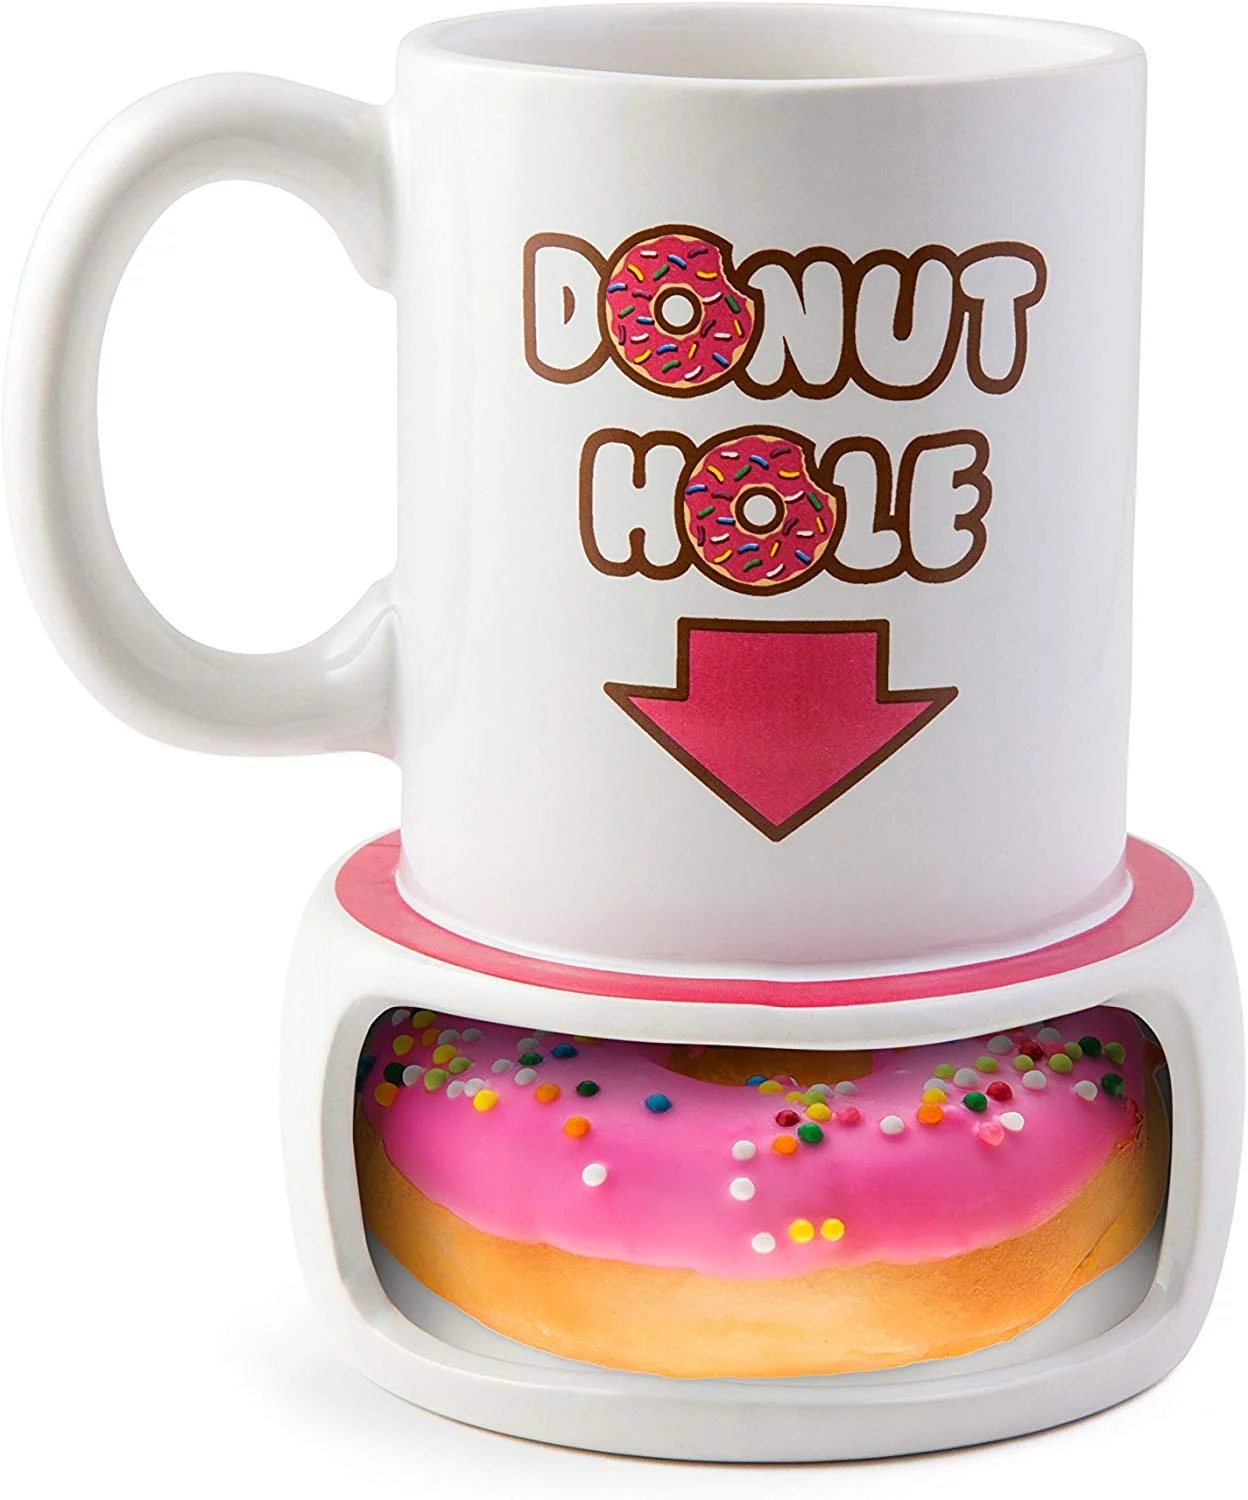 Funny Gag Gifts 2022: Donut Hole Mug 2022